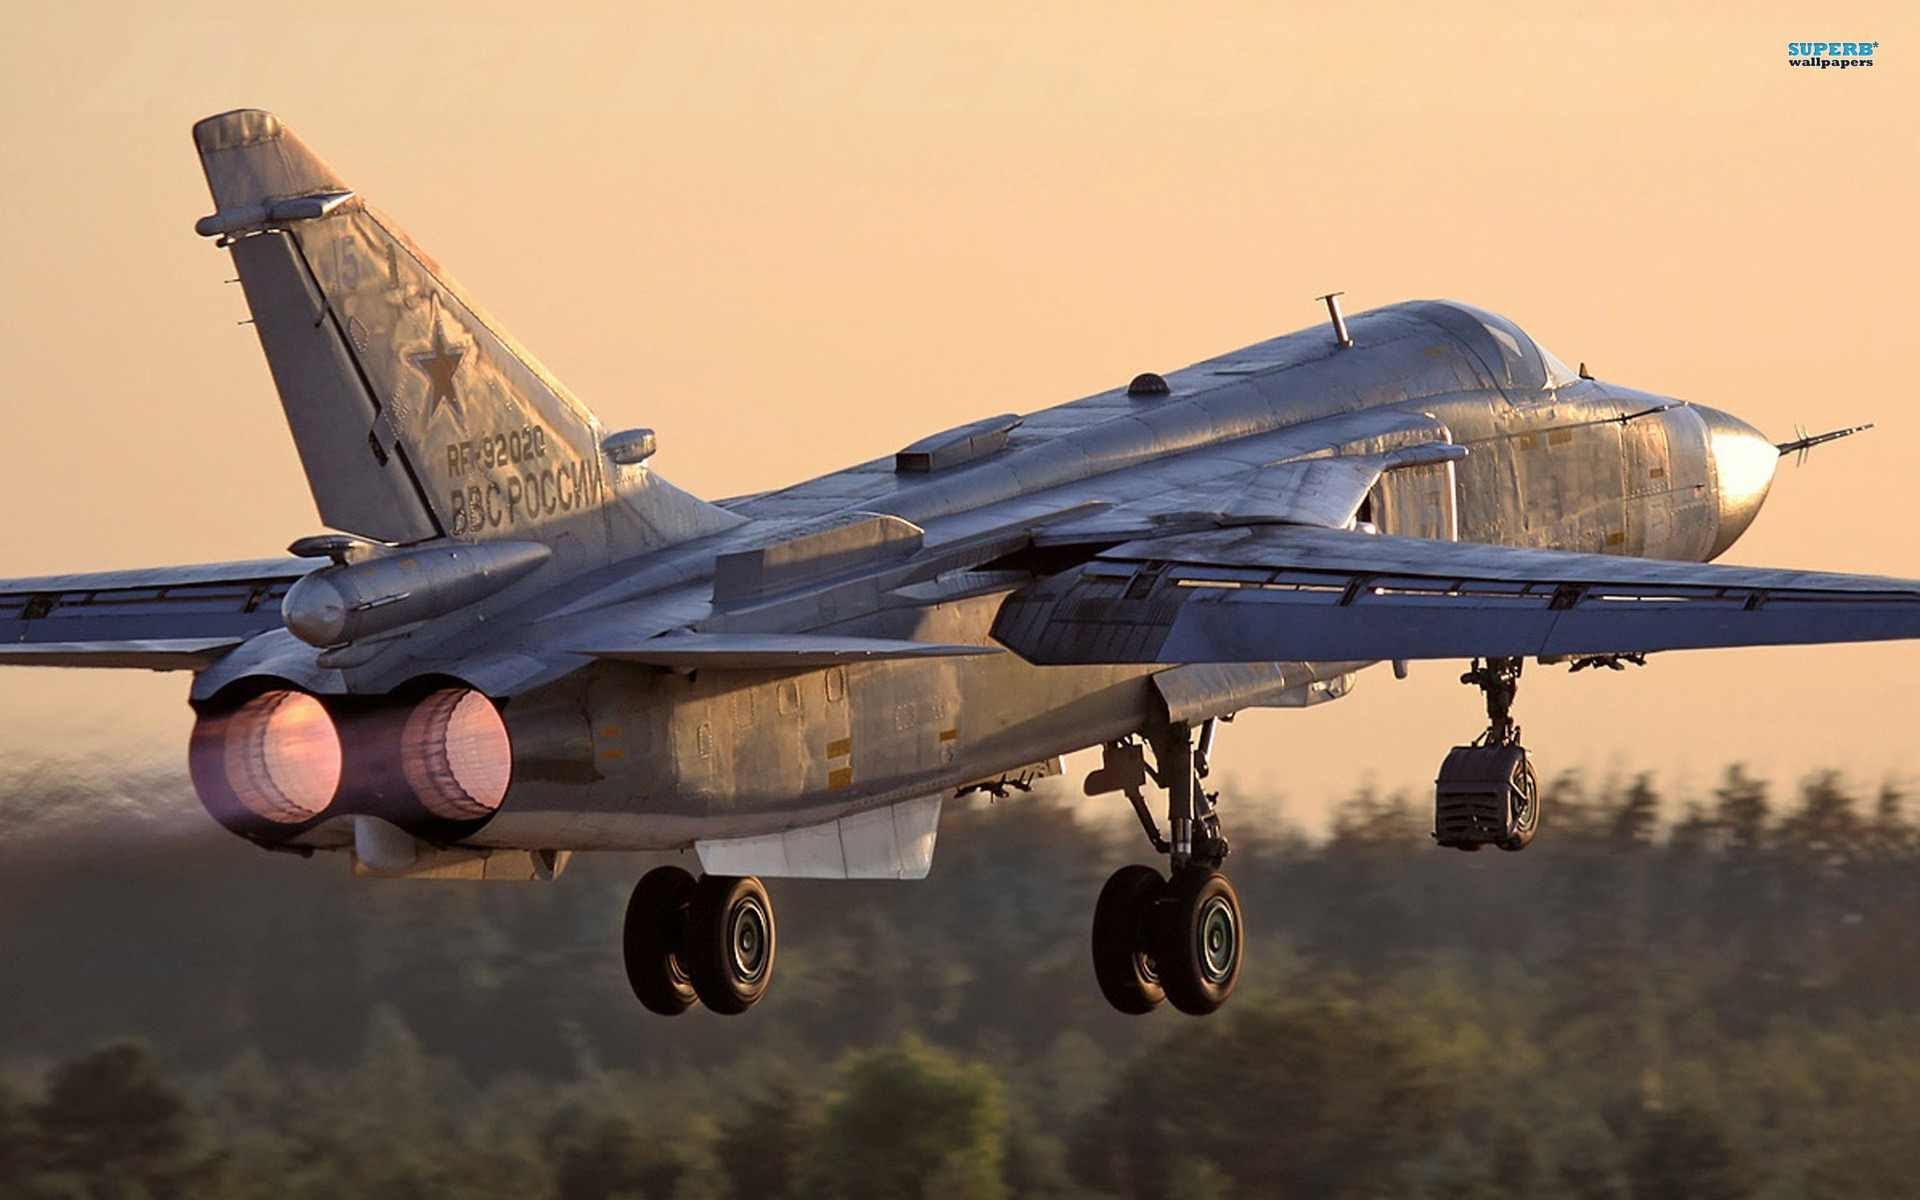 Sukhoi Su-24 Backgrounds, Compatible - PC, Mobile, Gadgets| 1920x1200 px